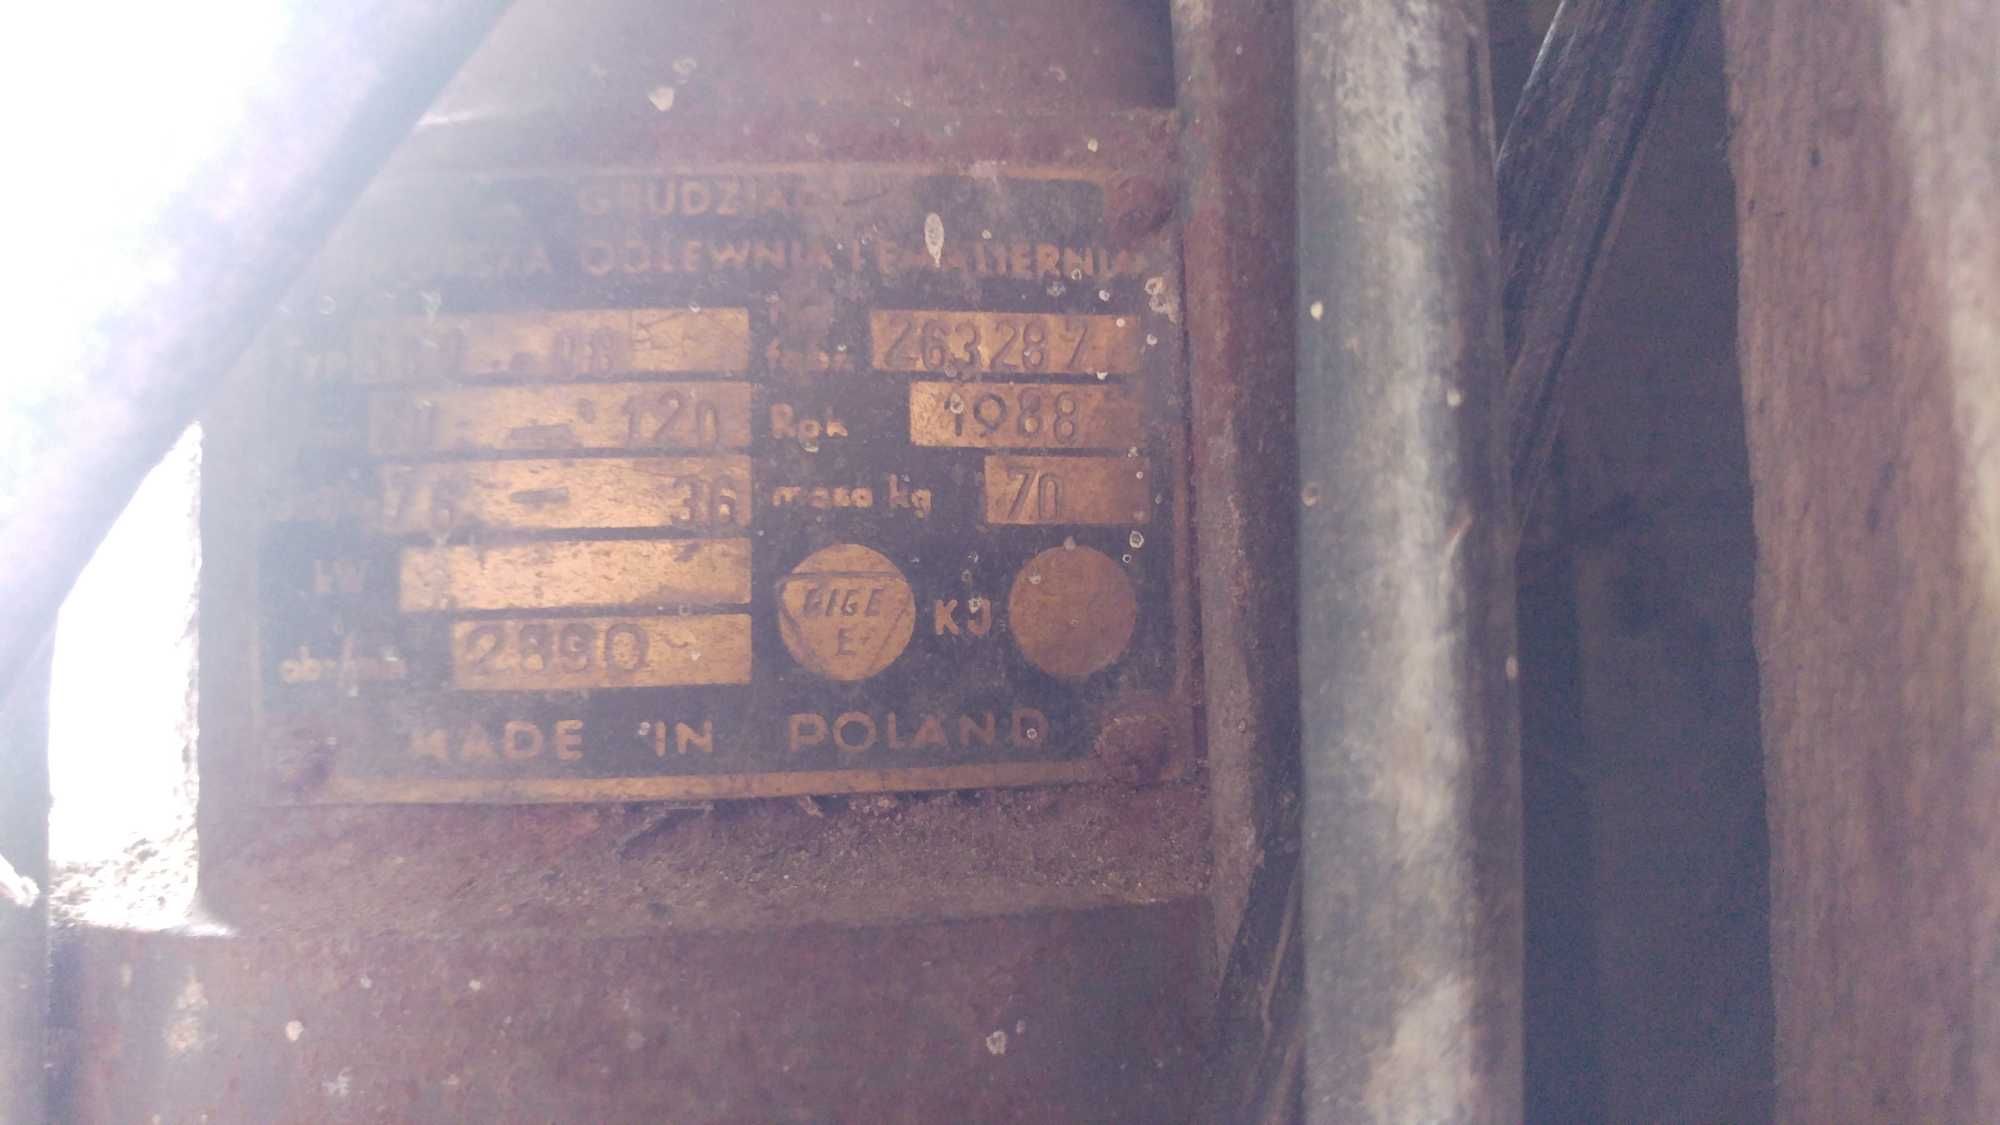 Nowa pompa głębinowa Grudziądz 1988rok. Moc 2.2kW